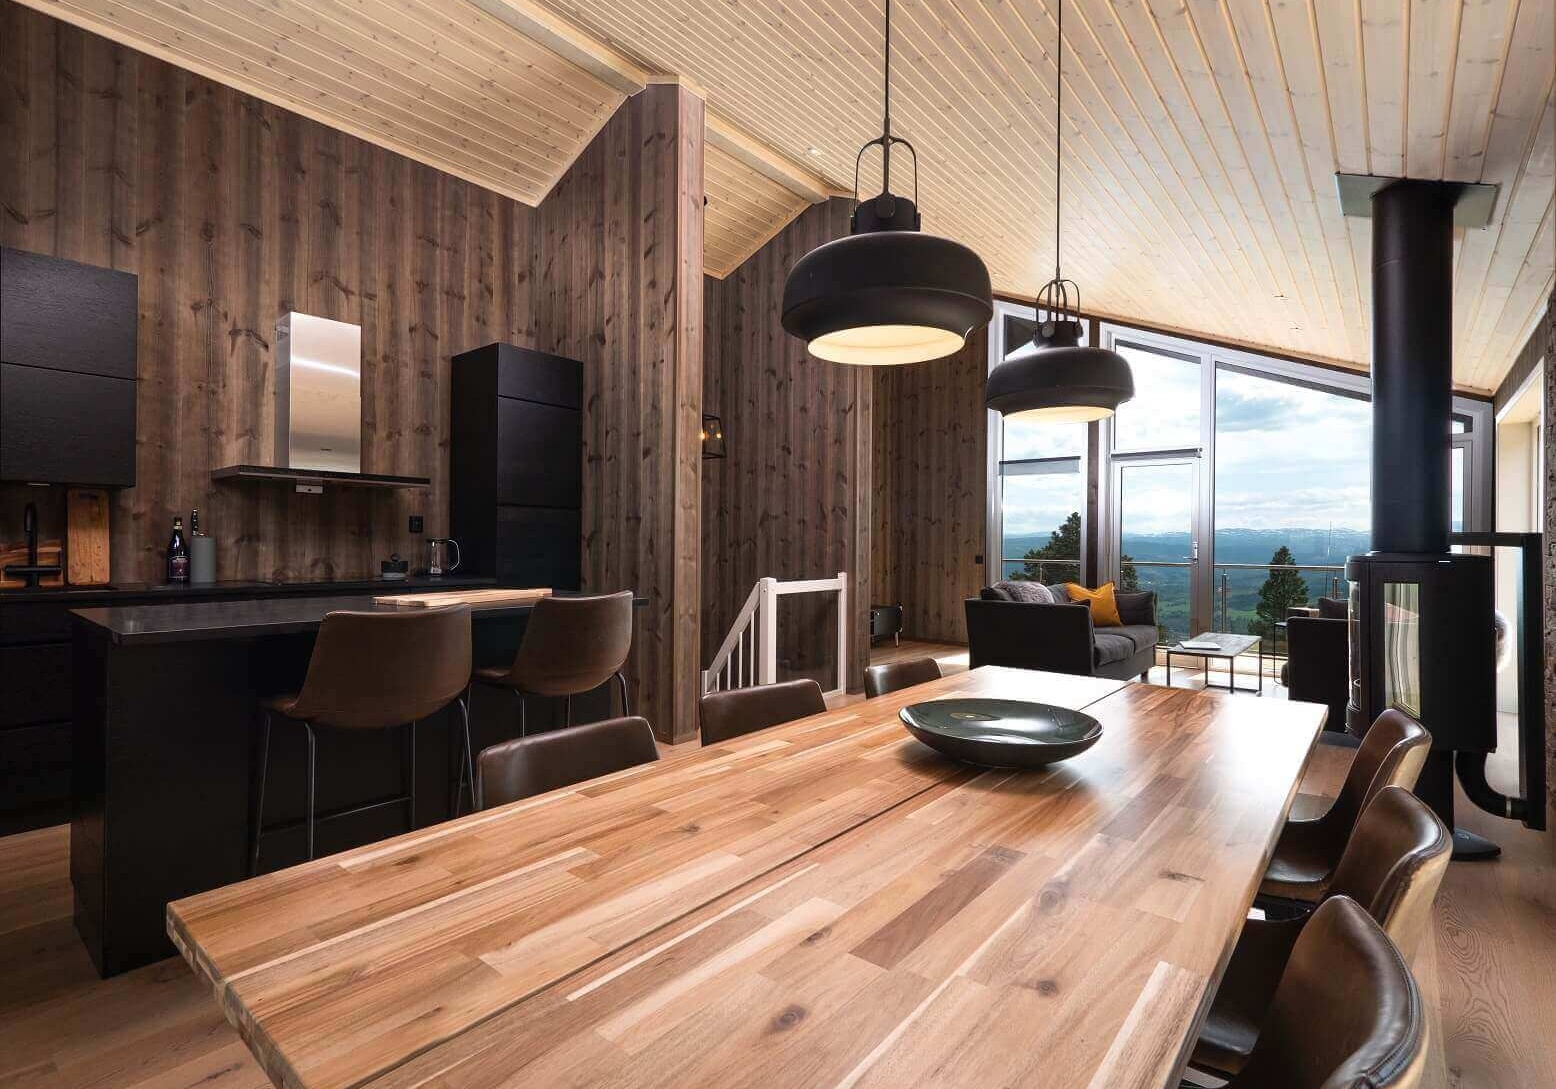 Vindvinkelbilde fra spisestue med kjøkken og stue i bakgrunnen. Brune panelvegger, sort kjøkkeninnredning og trefarget spisebord med stoler i brunt skinn. Foto